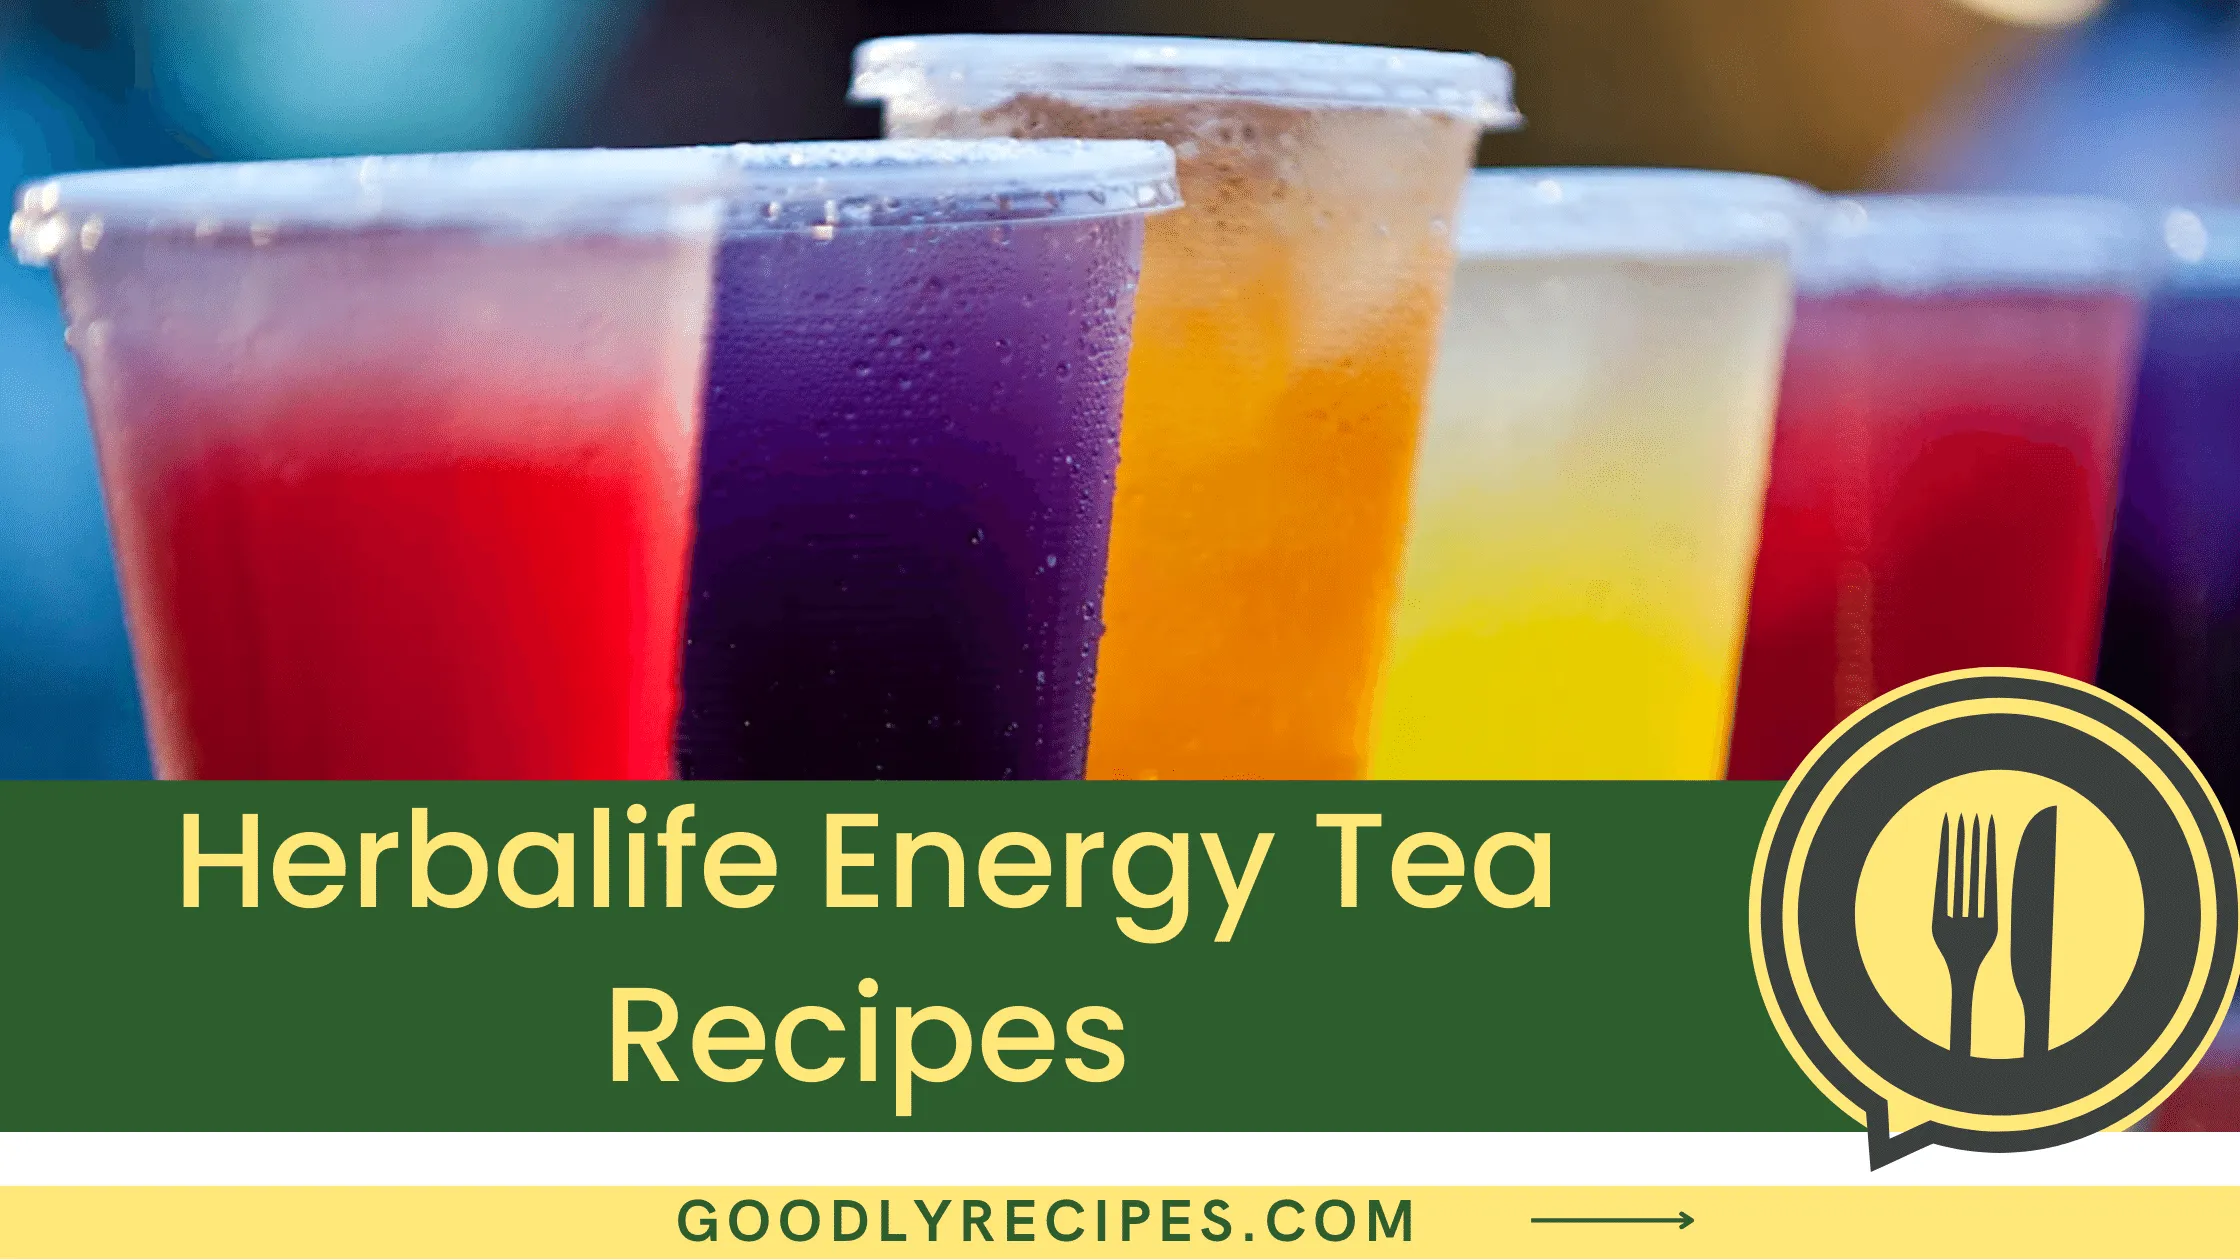 What is Herbalife Energy Tea?